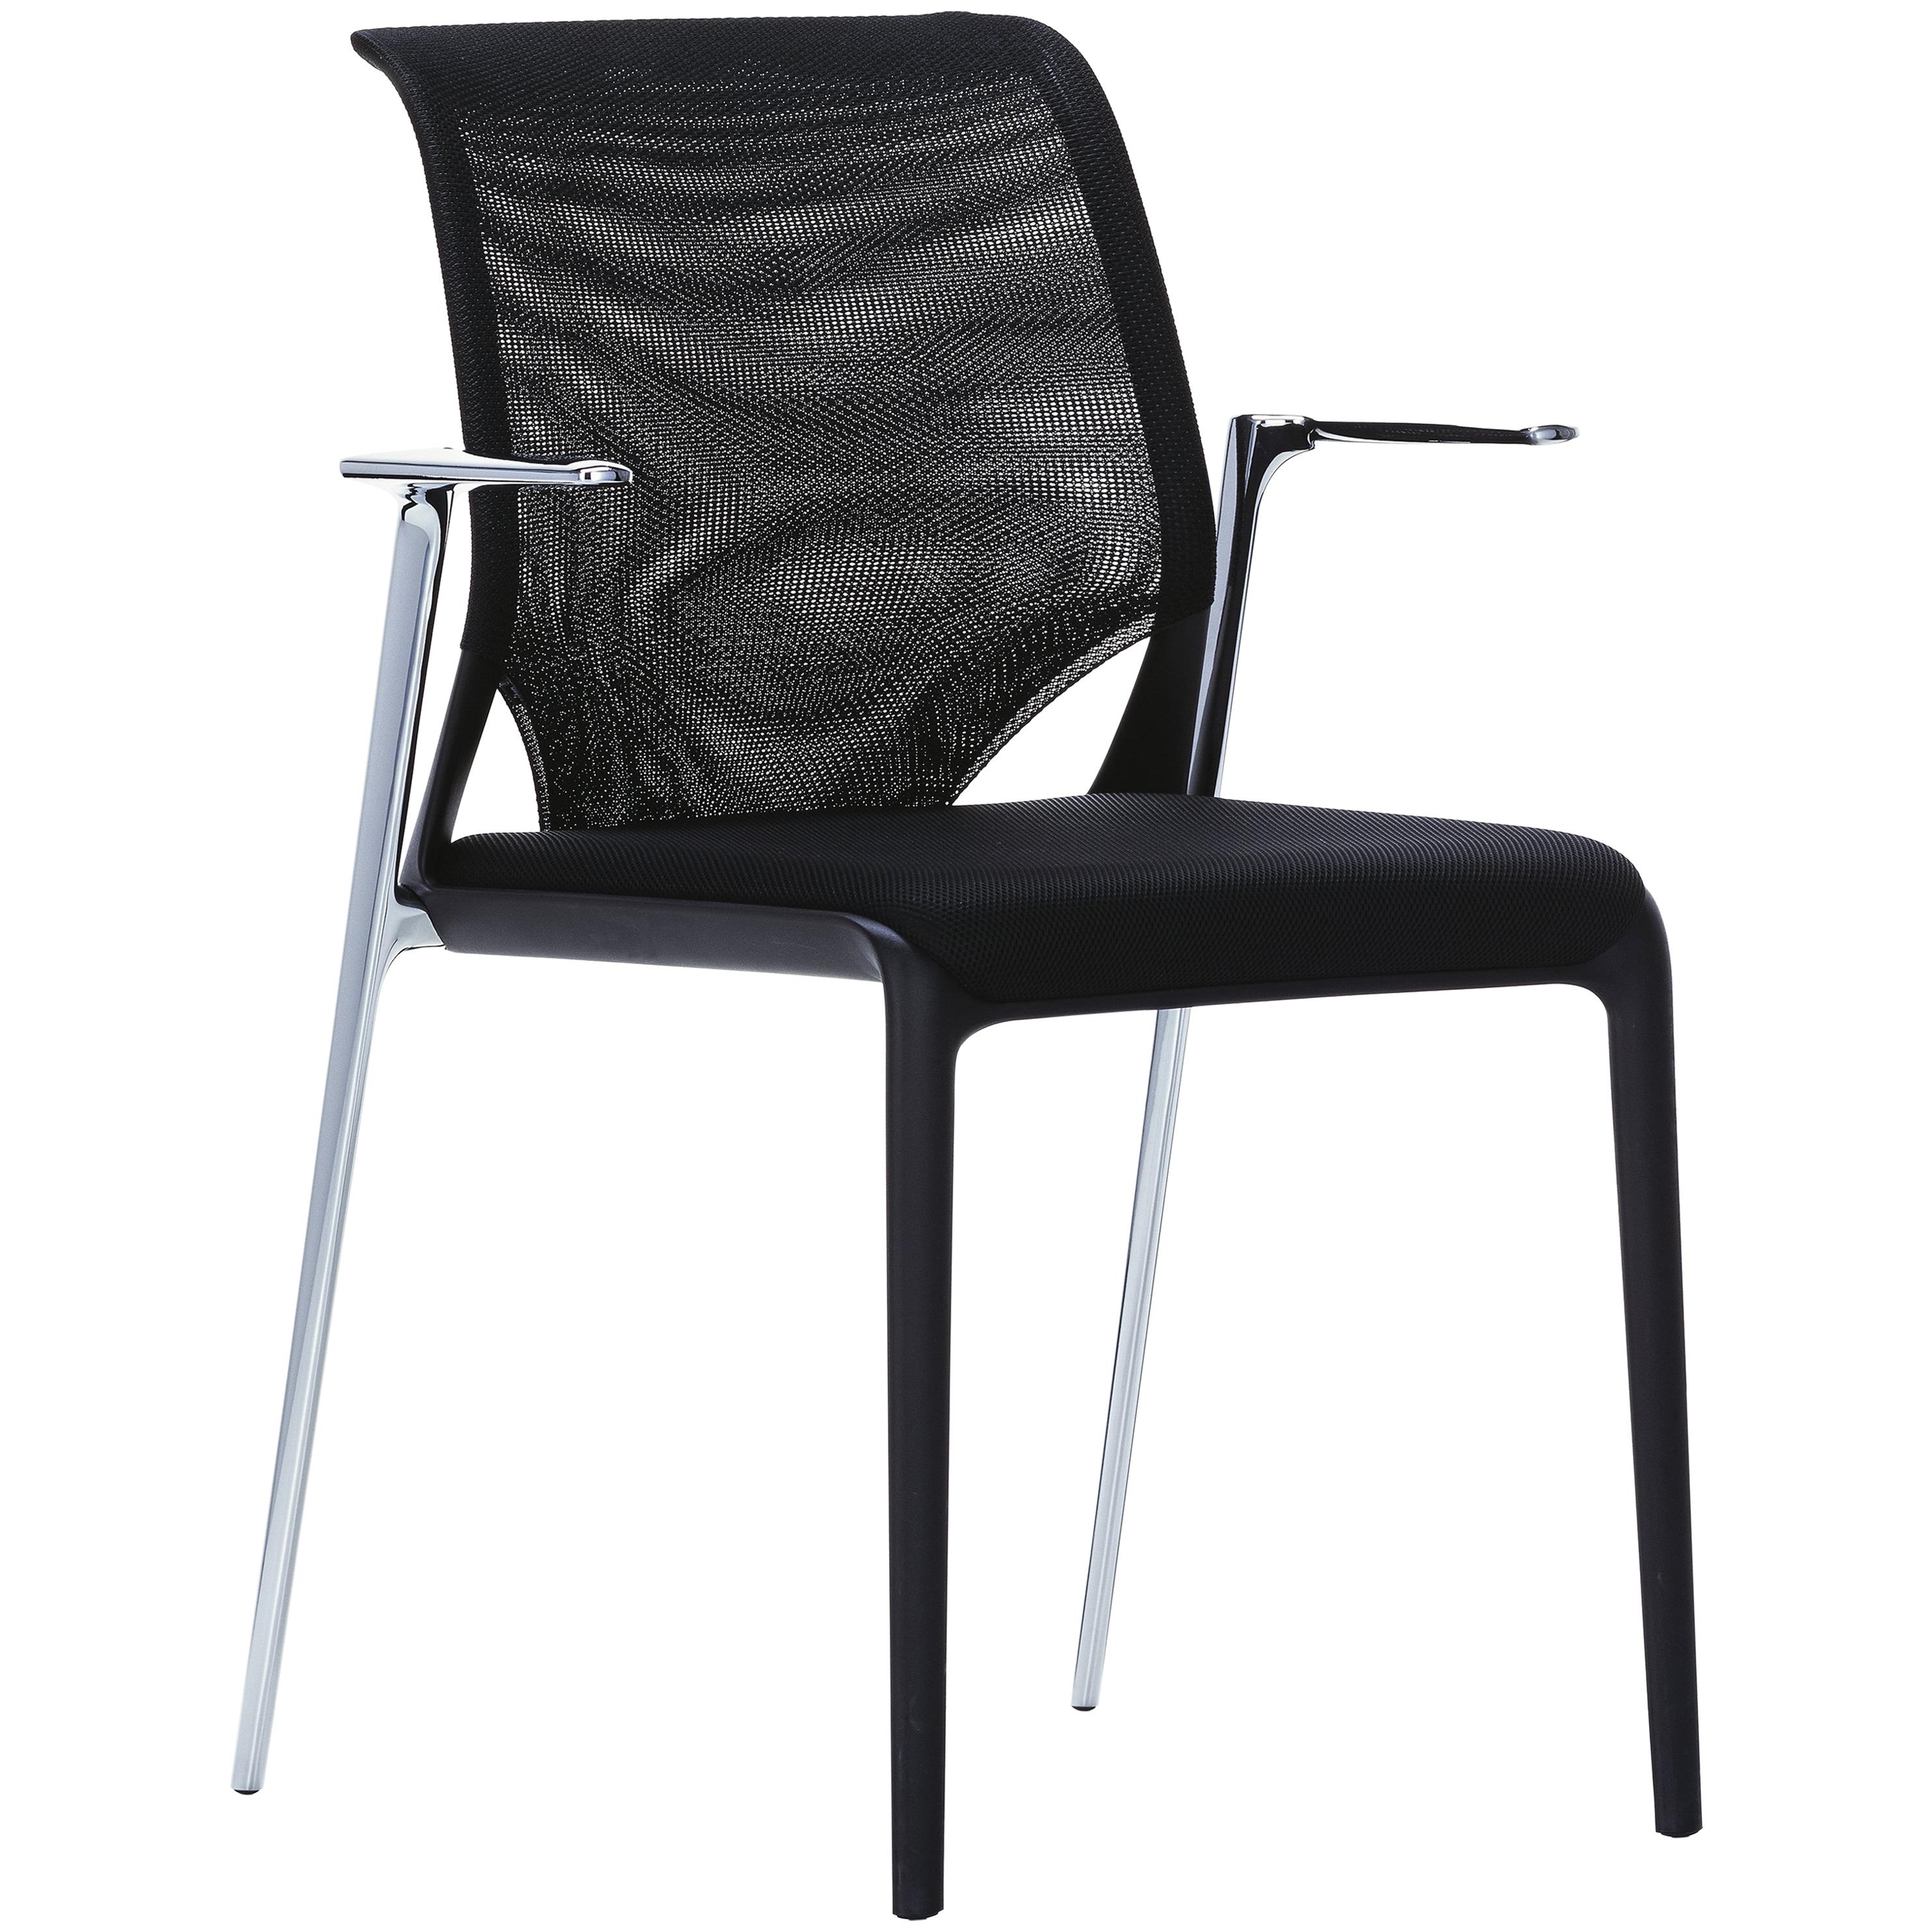 Vitra Meda Slim Chair in Black Nova and Chrome Legs by Alberto Meda For Sale